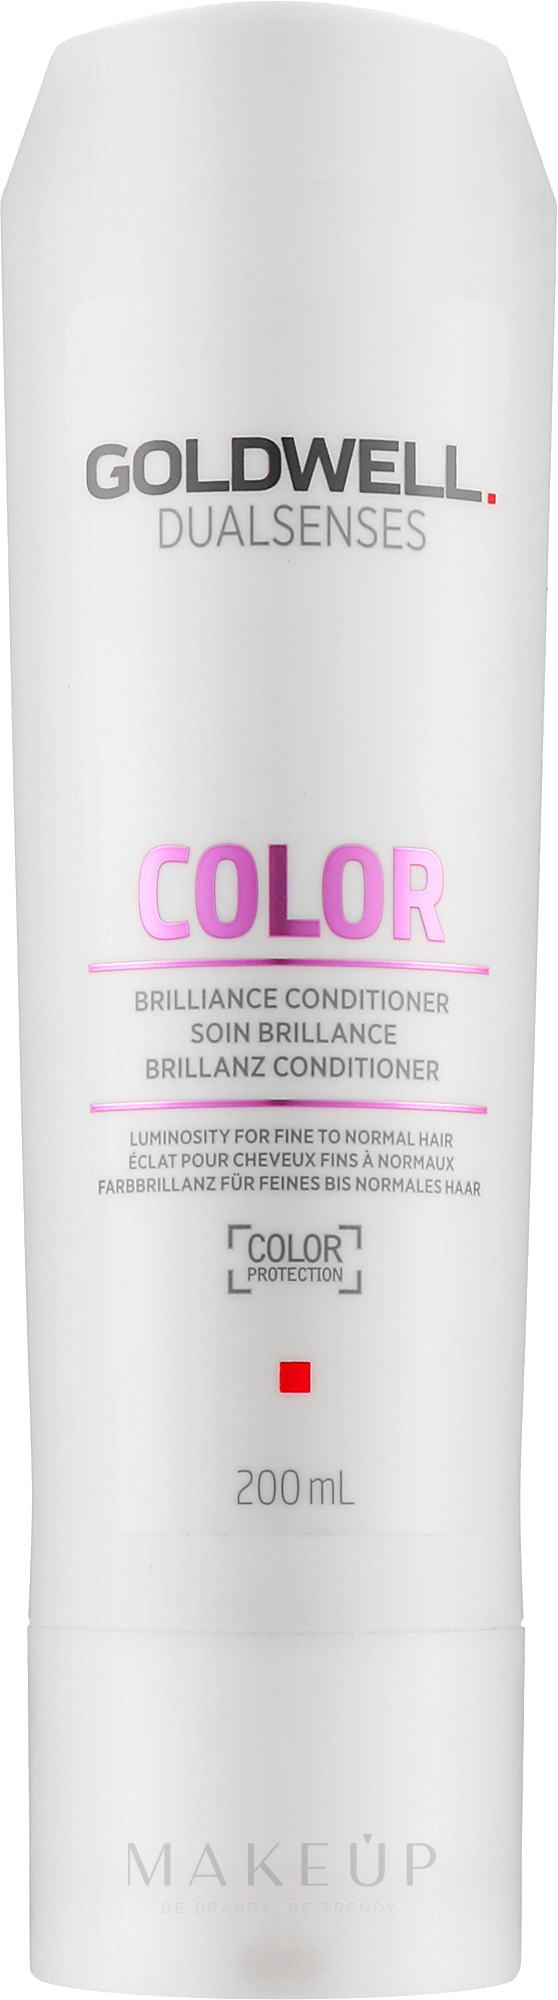 Farbbrillanz für feines bis normales Haar - Goldwell Dualsenses Color Brilliance Conditioner — Bild 200 ml